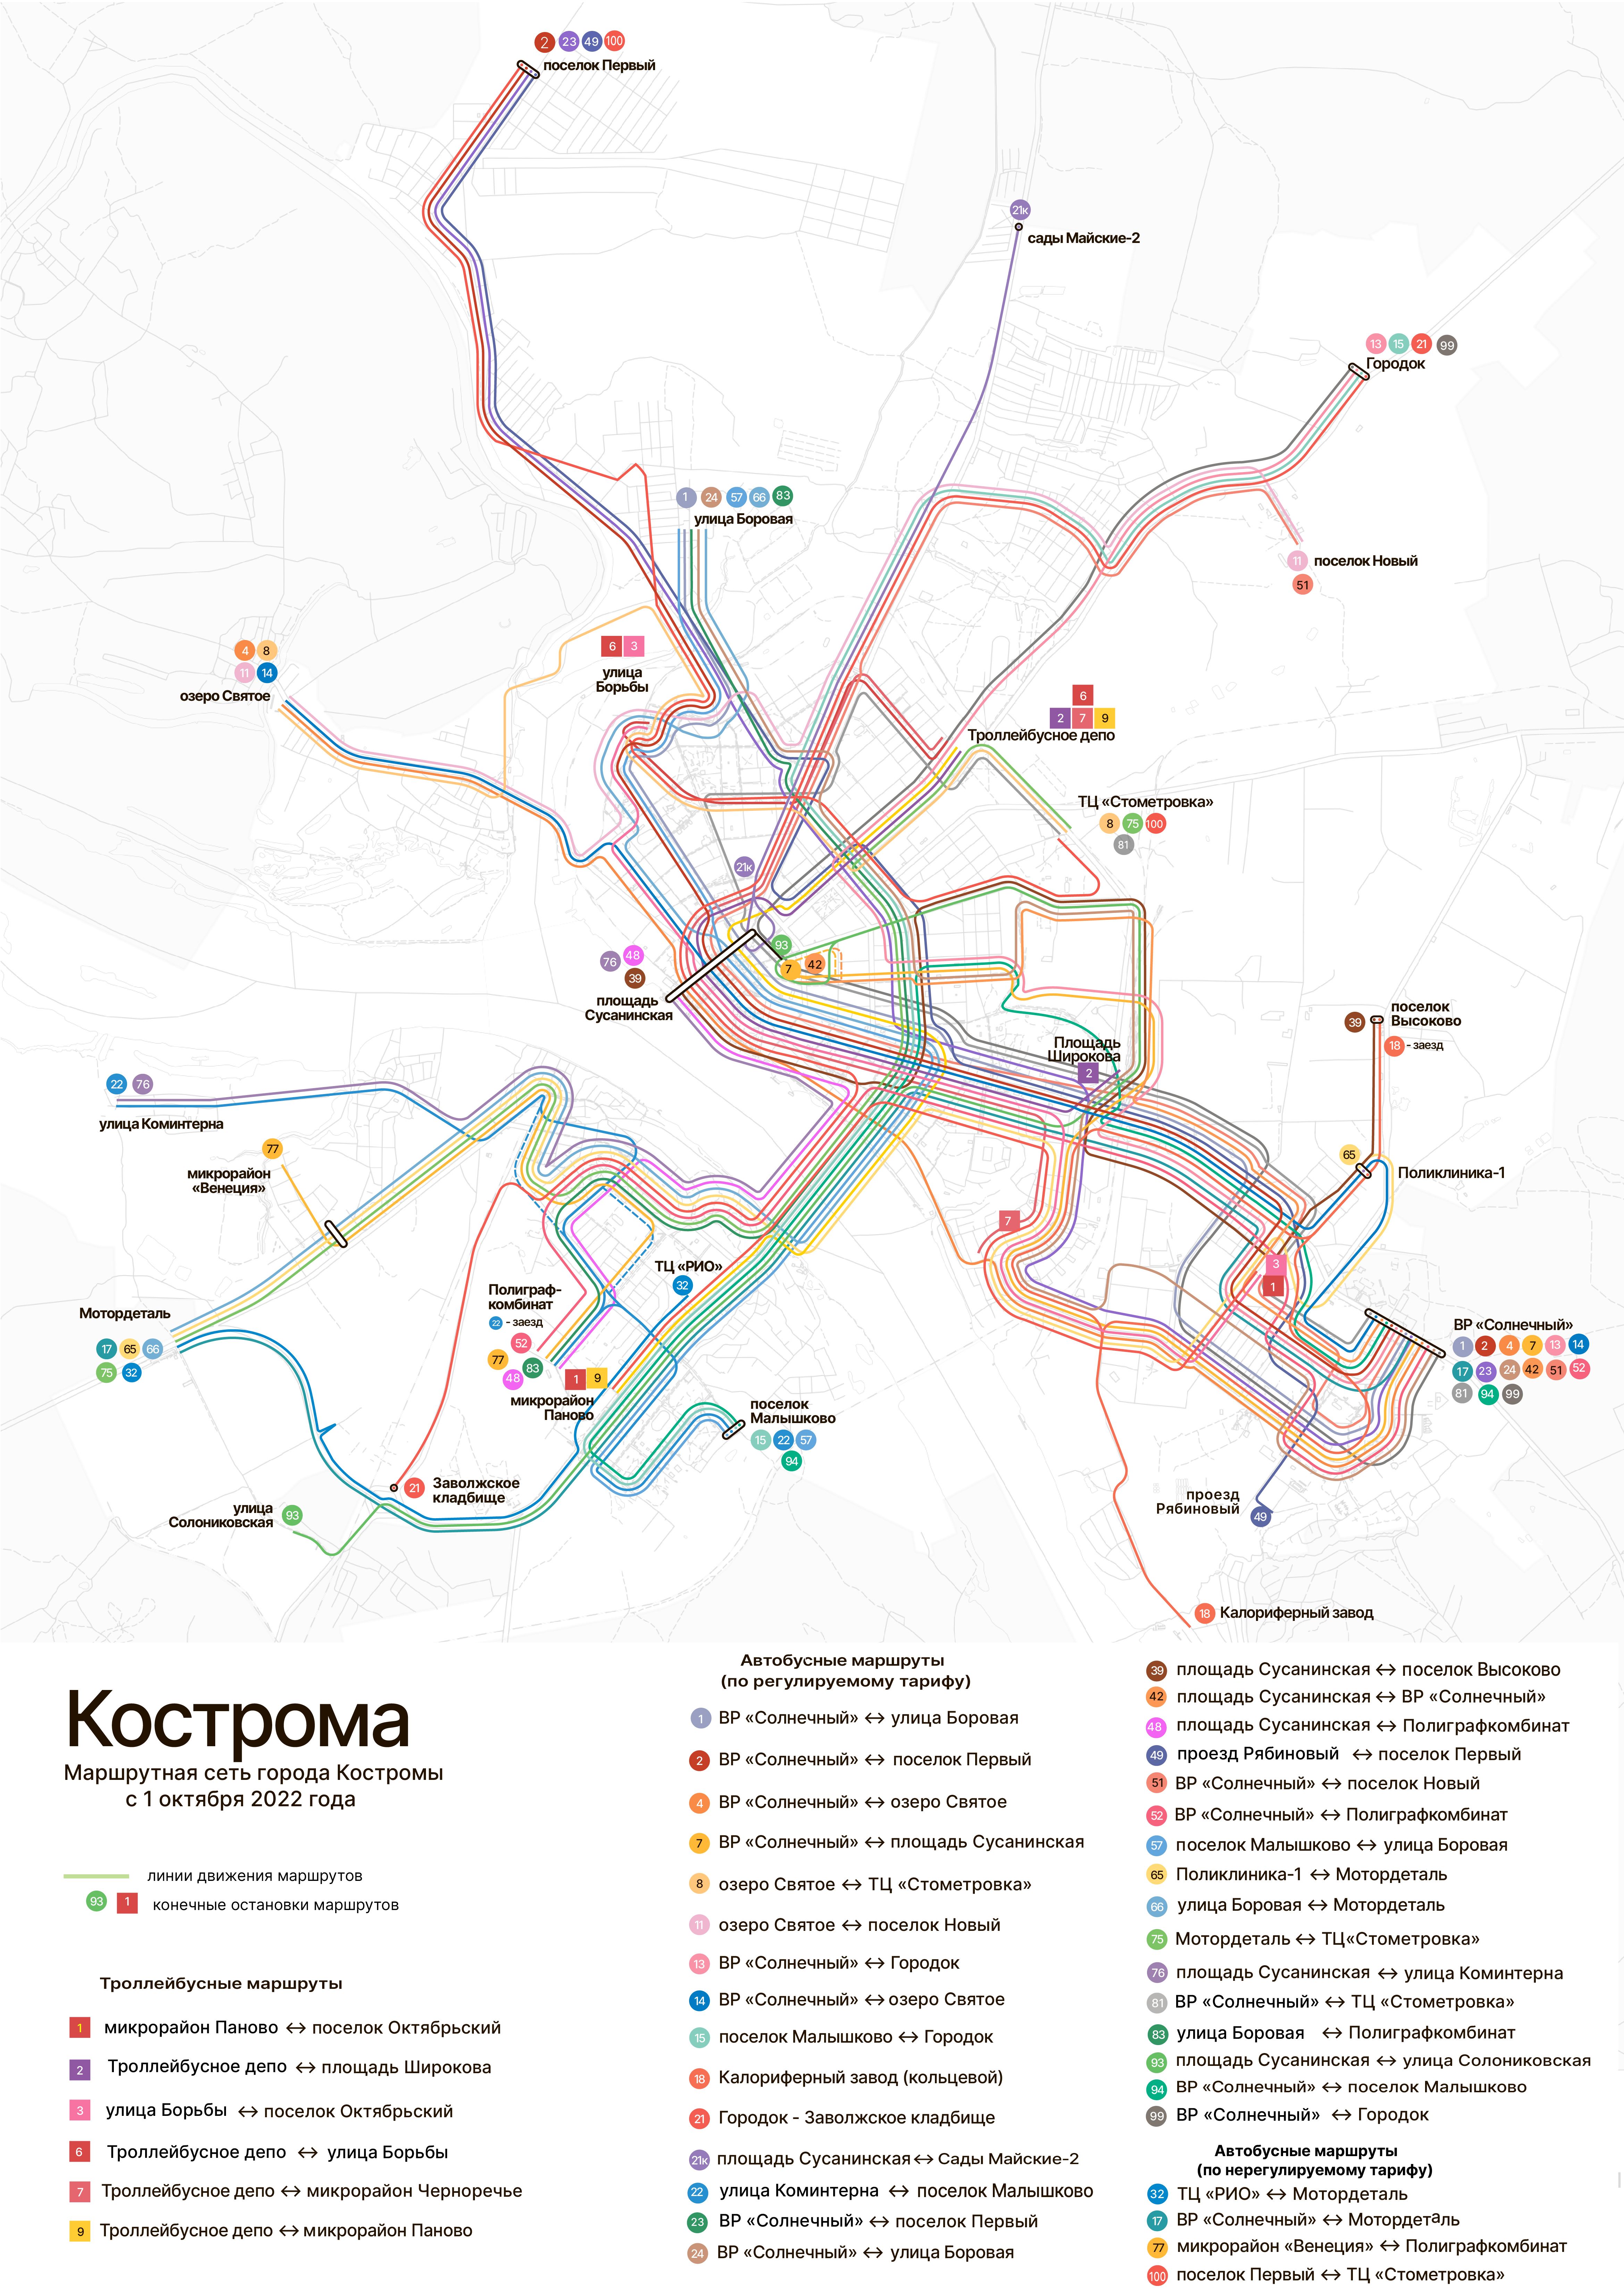 В Костроме с 1 октября начнет действовать новая маршрутная сеть общественного транспорта